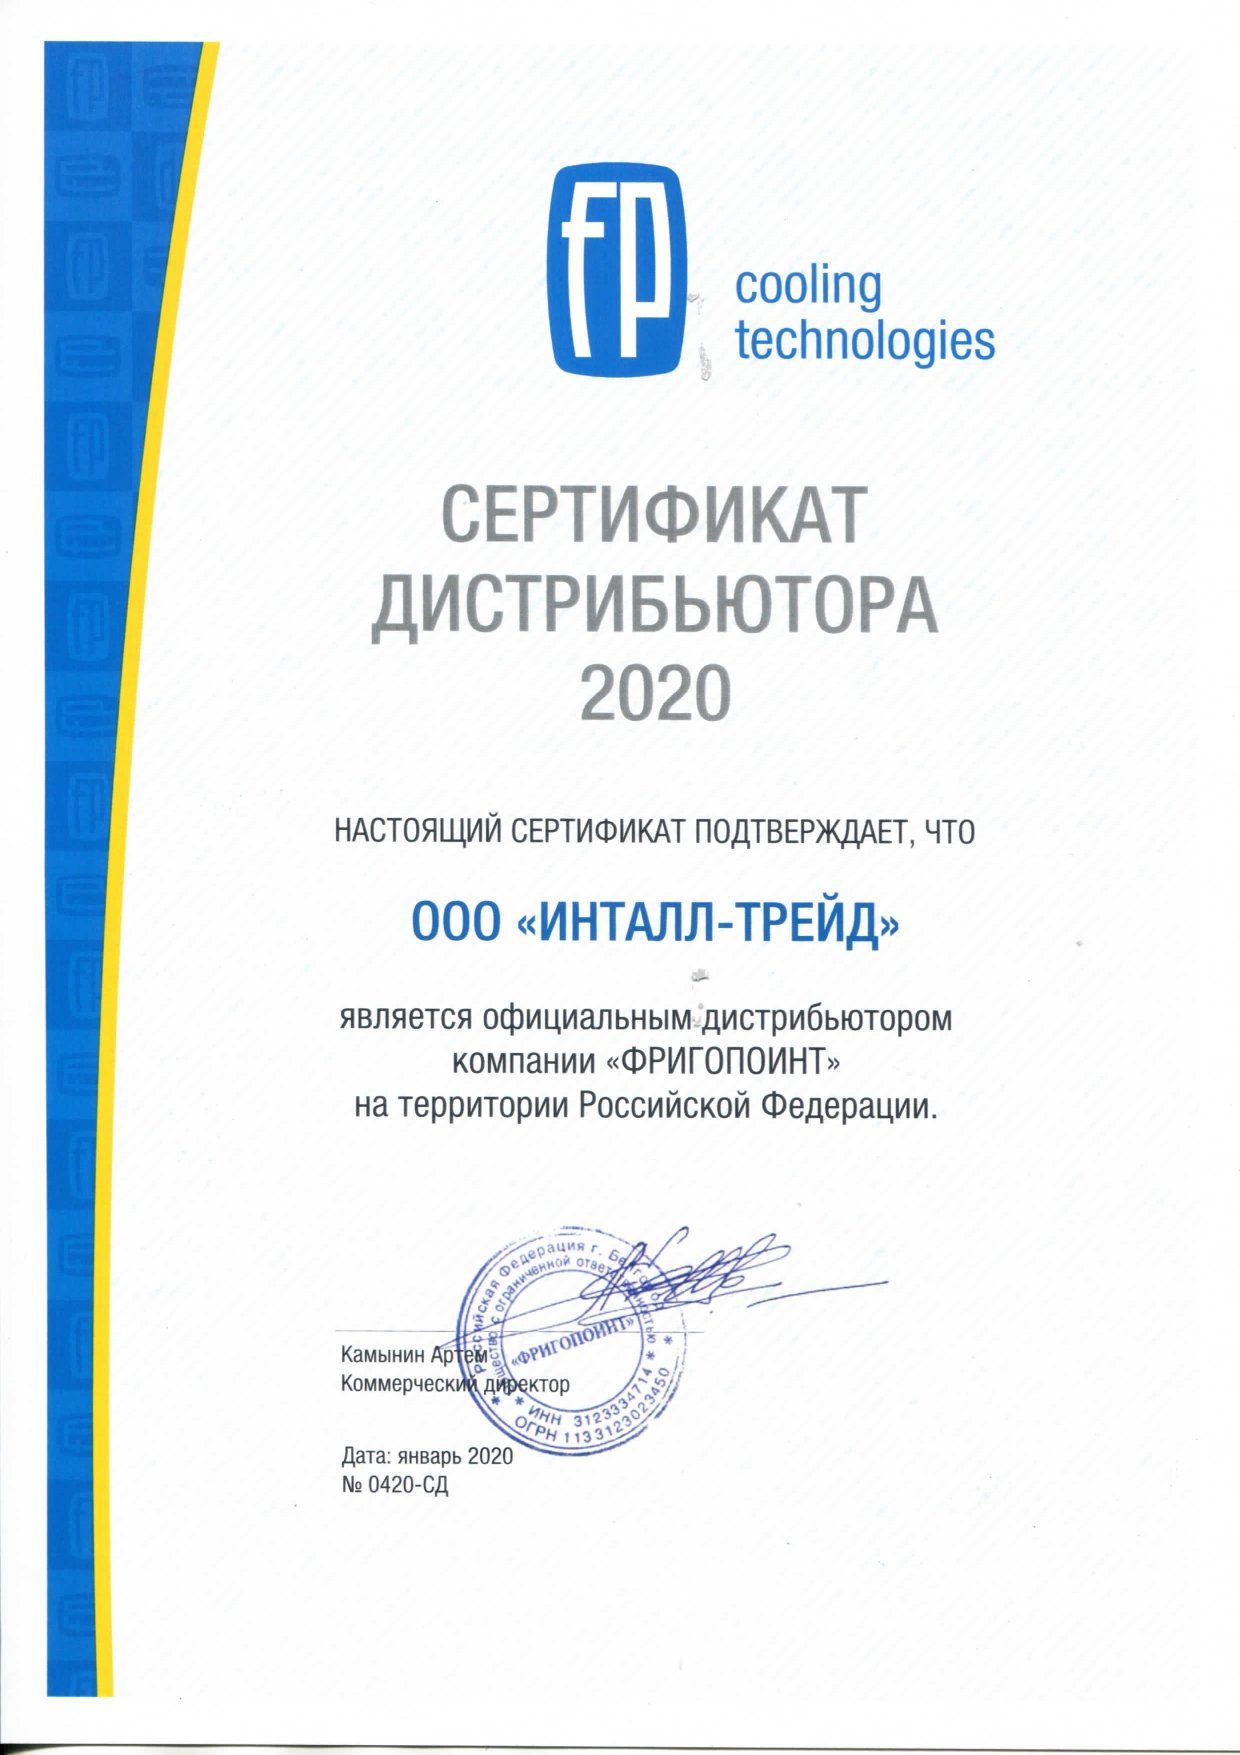 Сертификат дистрибьютора Фригопоинт